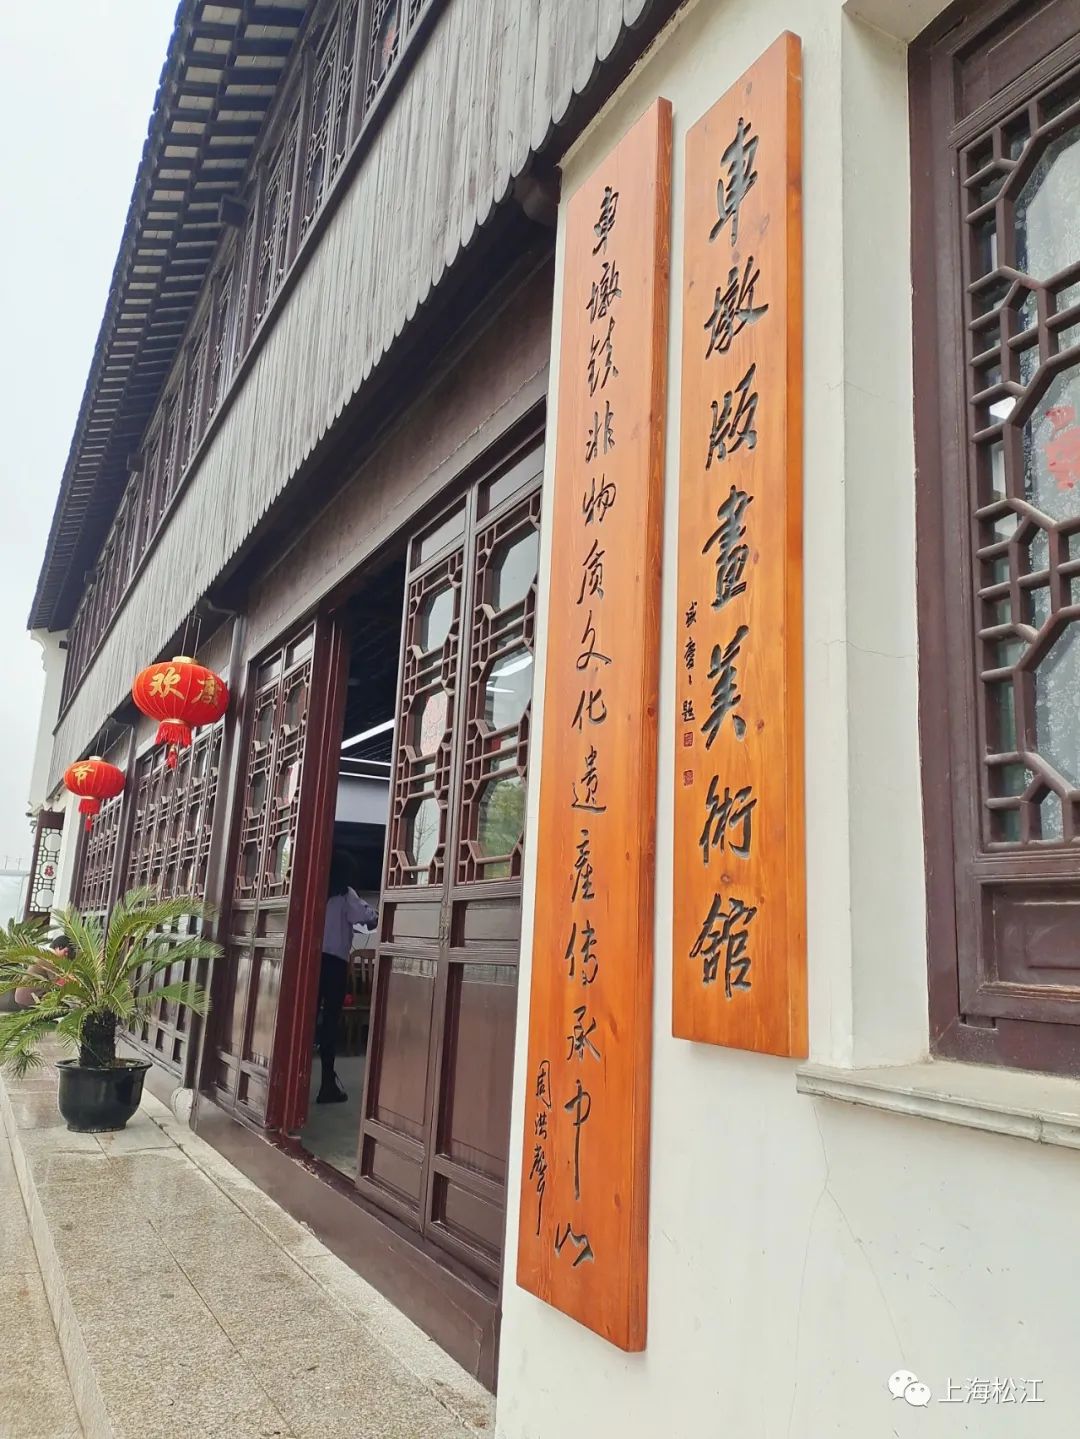 藏身于百年老宅之中，松江这个版画美术馆启用